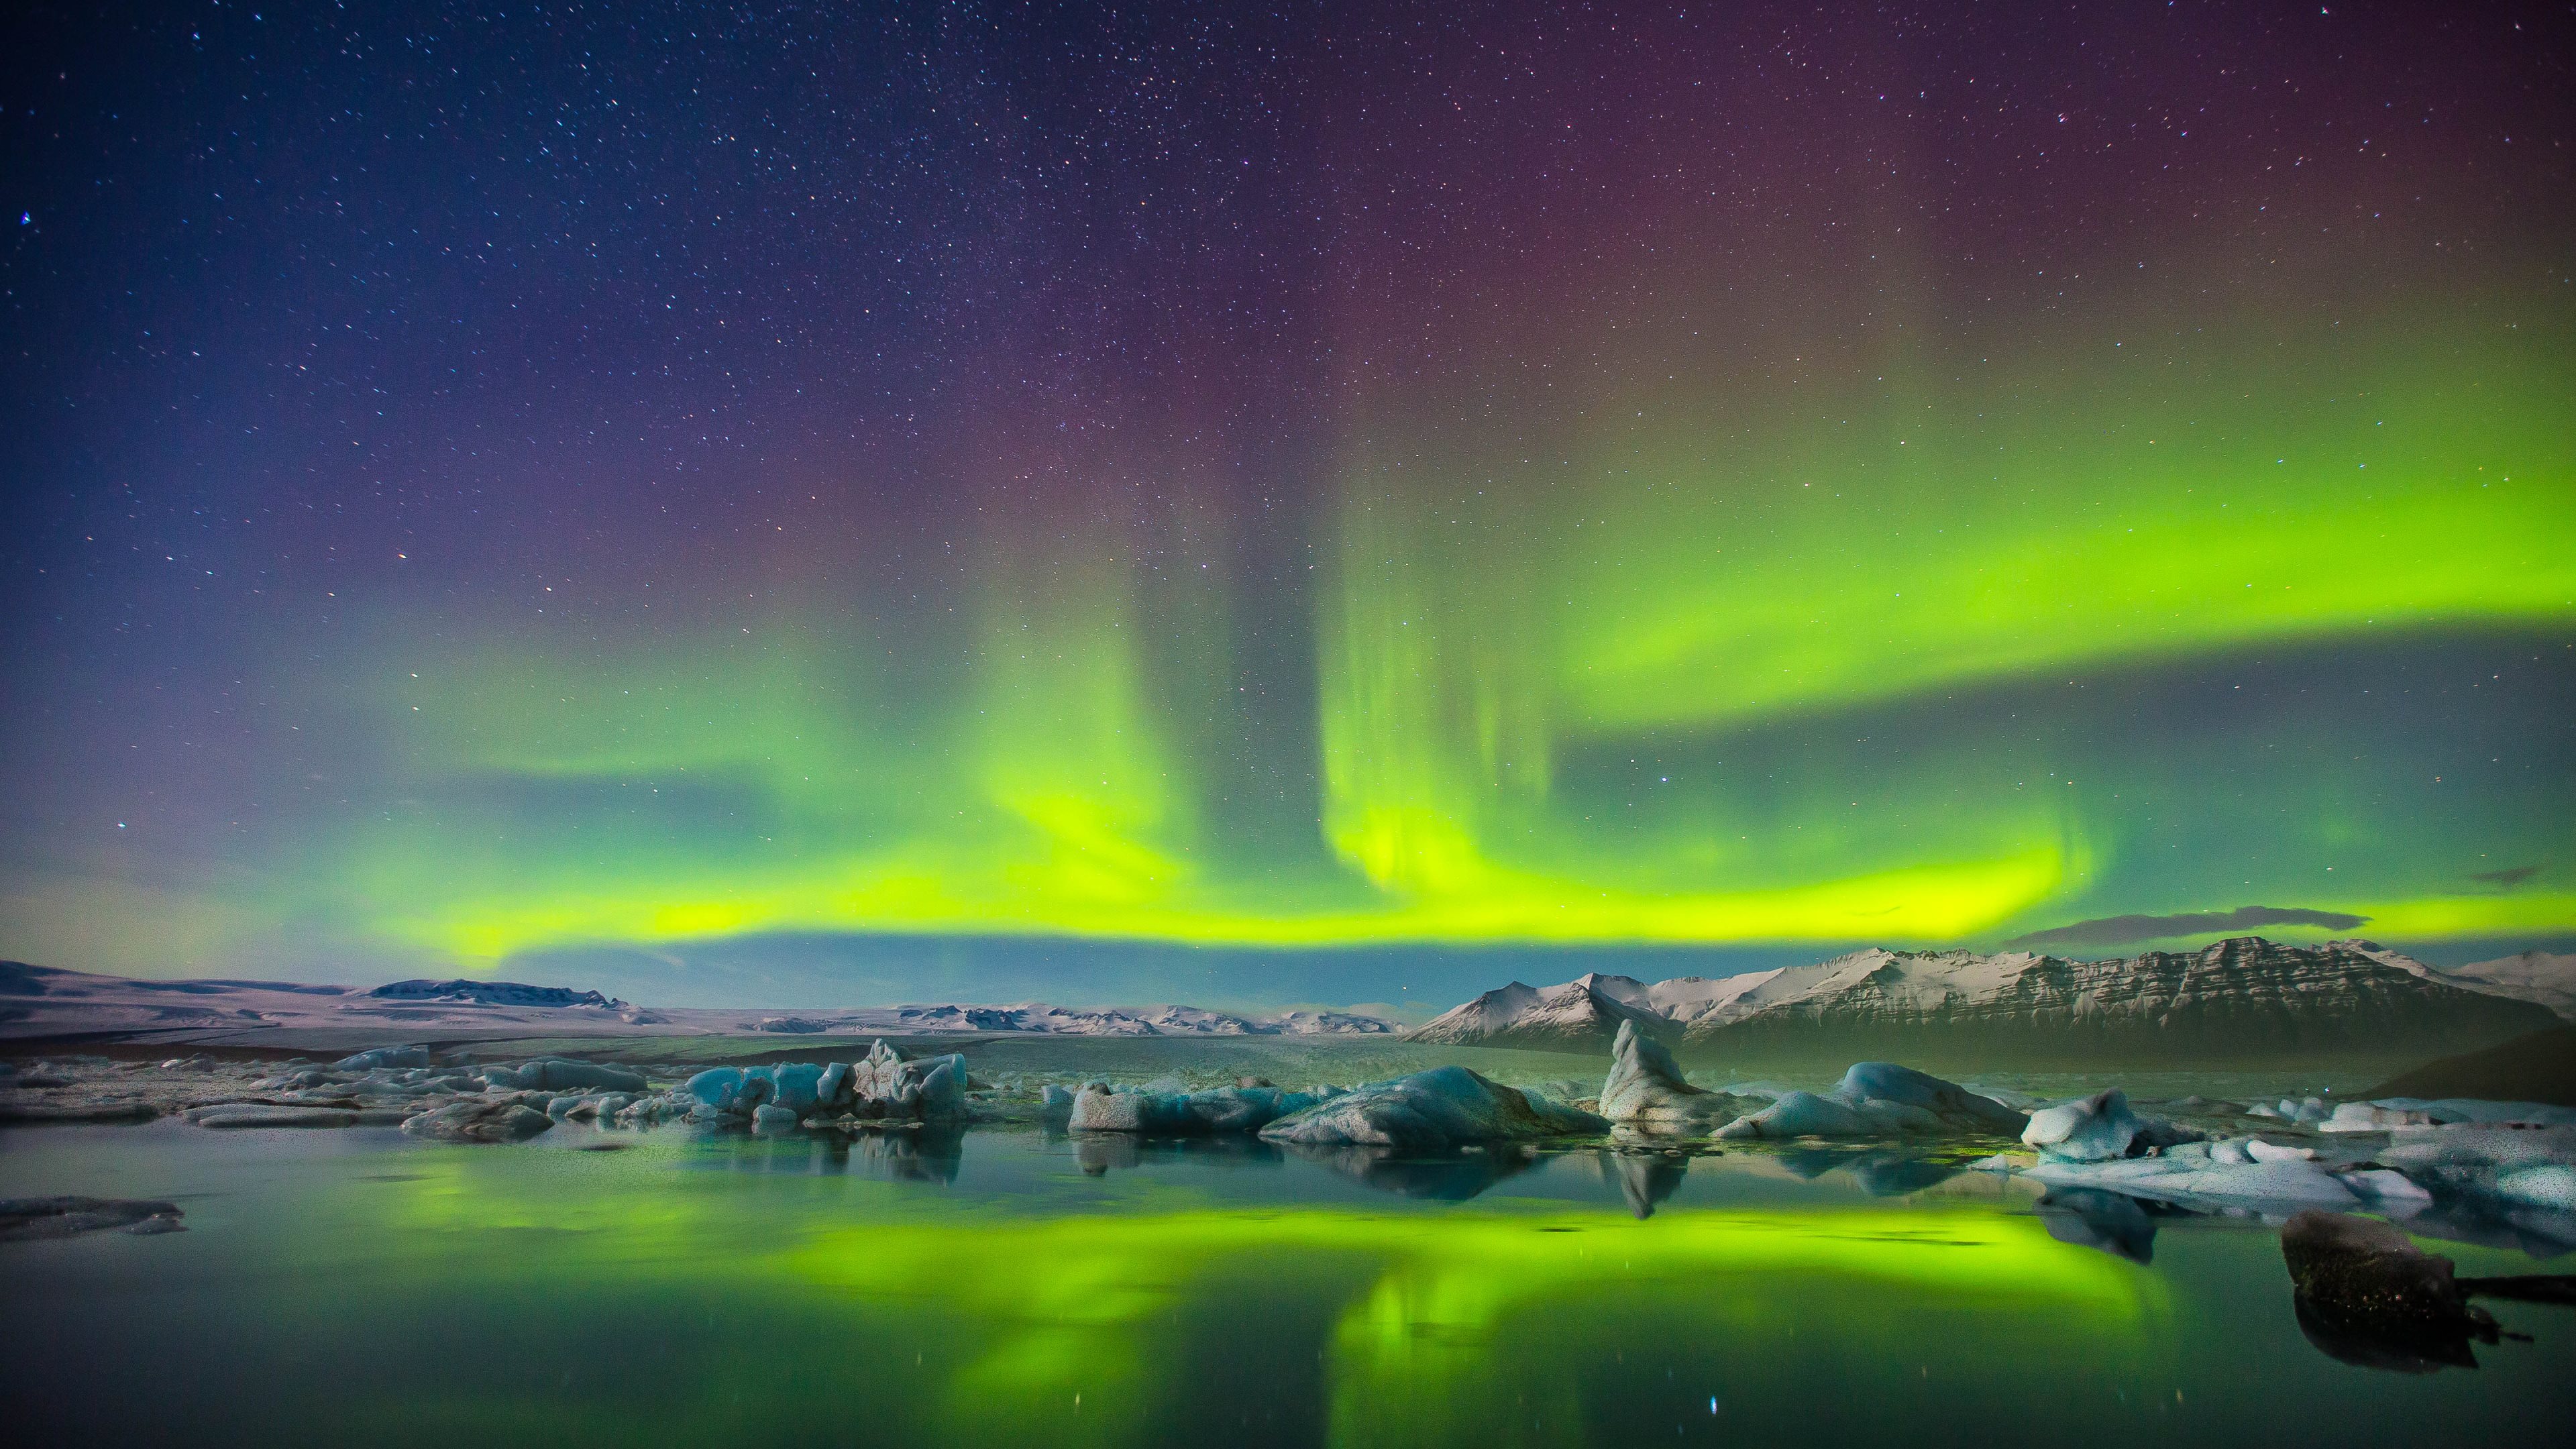 Hãy khám phá vẻ đẹp thần tiên của bắc cực với bức ảnh nền Aurora Borealis HD. Hình ảnh những vệt sáng lung linh phản chiếu trên mặt nước sẽ khiến bạn mãn nhãn và cảm nhận được sức mạnh đầy mê hoặc của thiên nhiên.